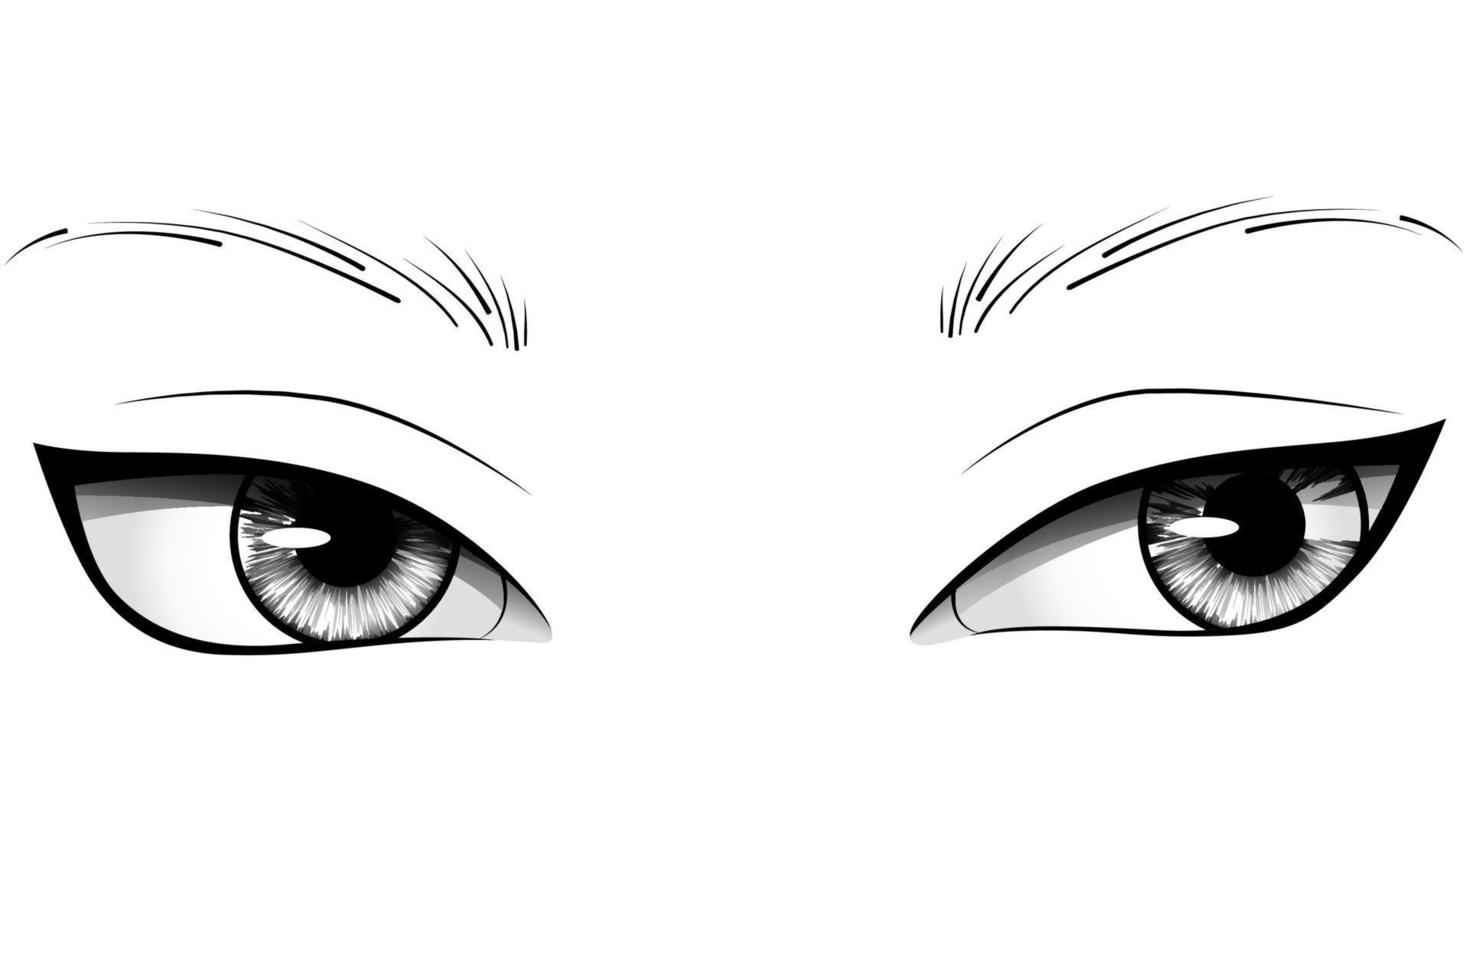 handgetekende cartoon vrouw ogen met gedetailleerde irissen, wenkbrauwen en wimpers. typografie vectorillustratie vector